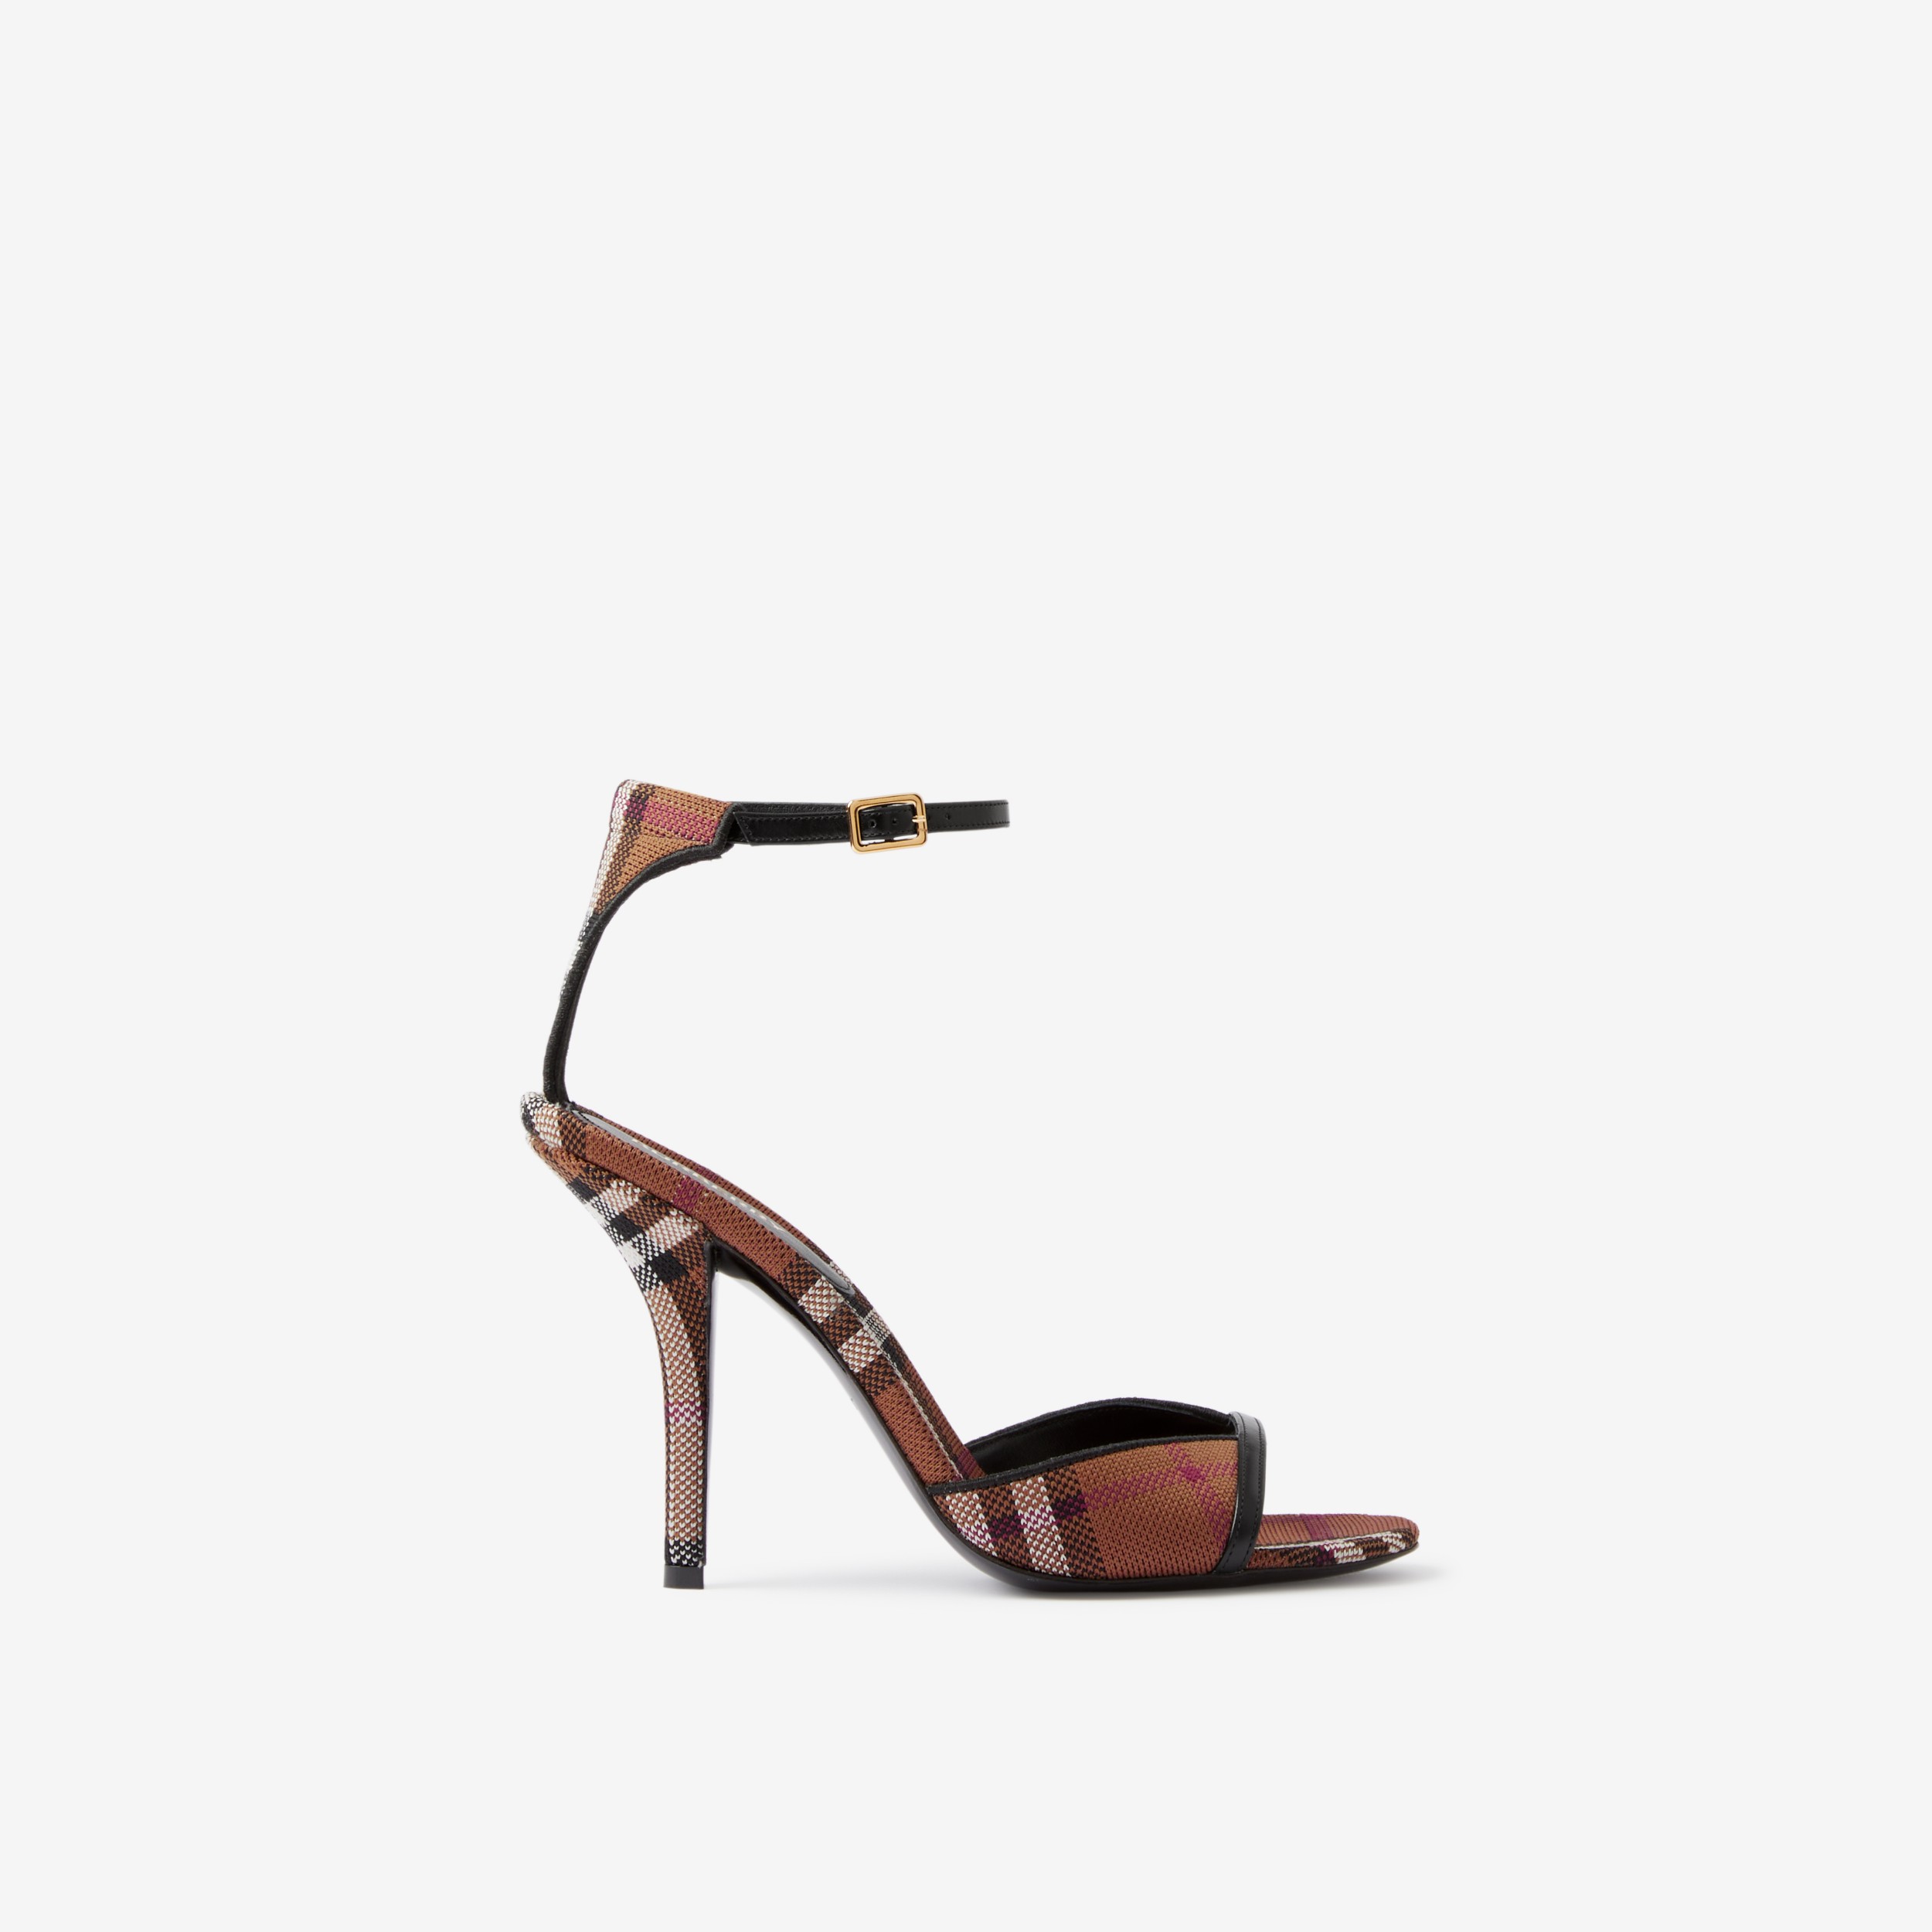 Aprender acerca 104+ imagen burberry high heel sandals - Viaterra.mx